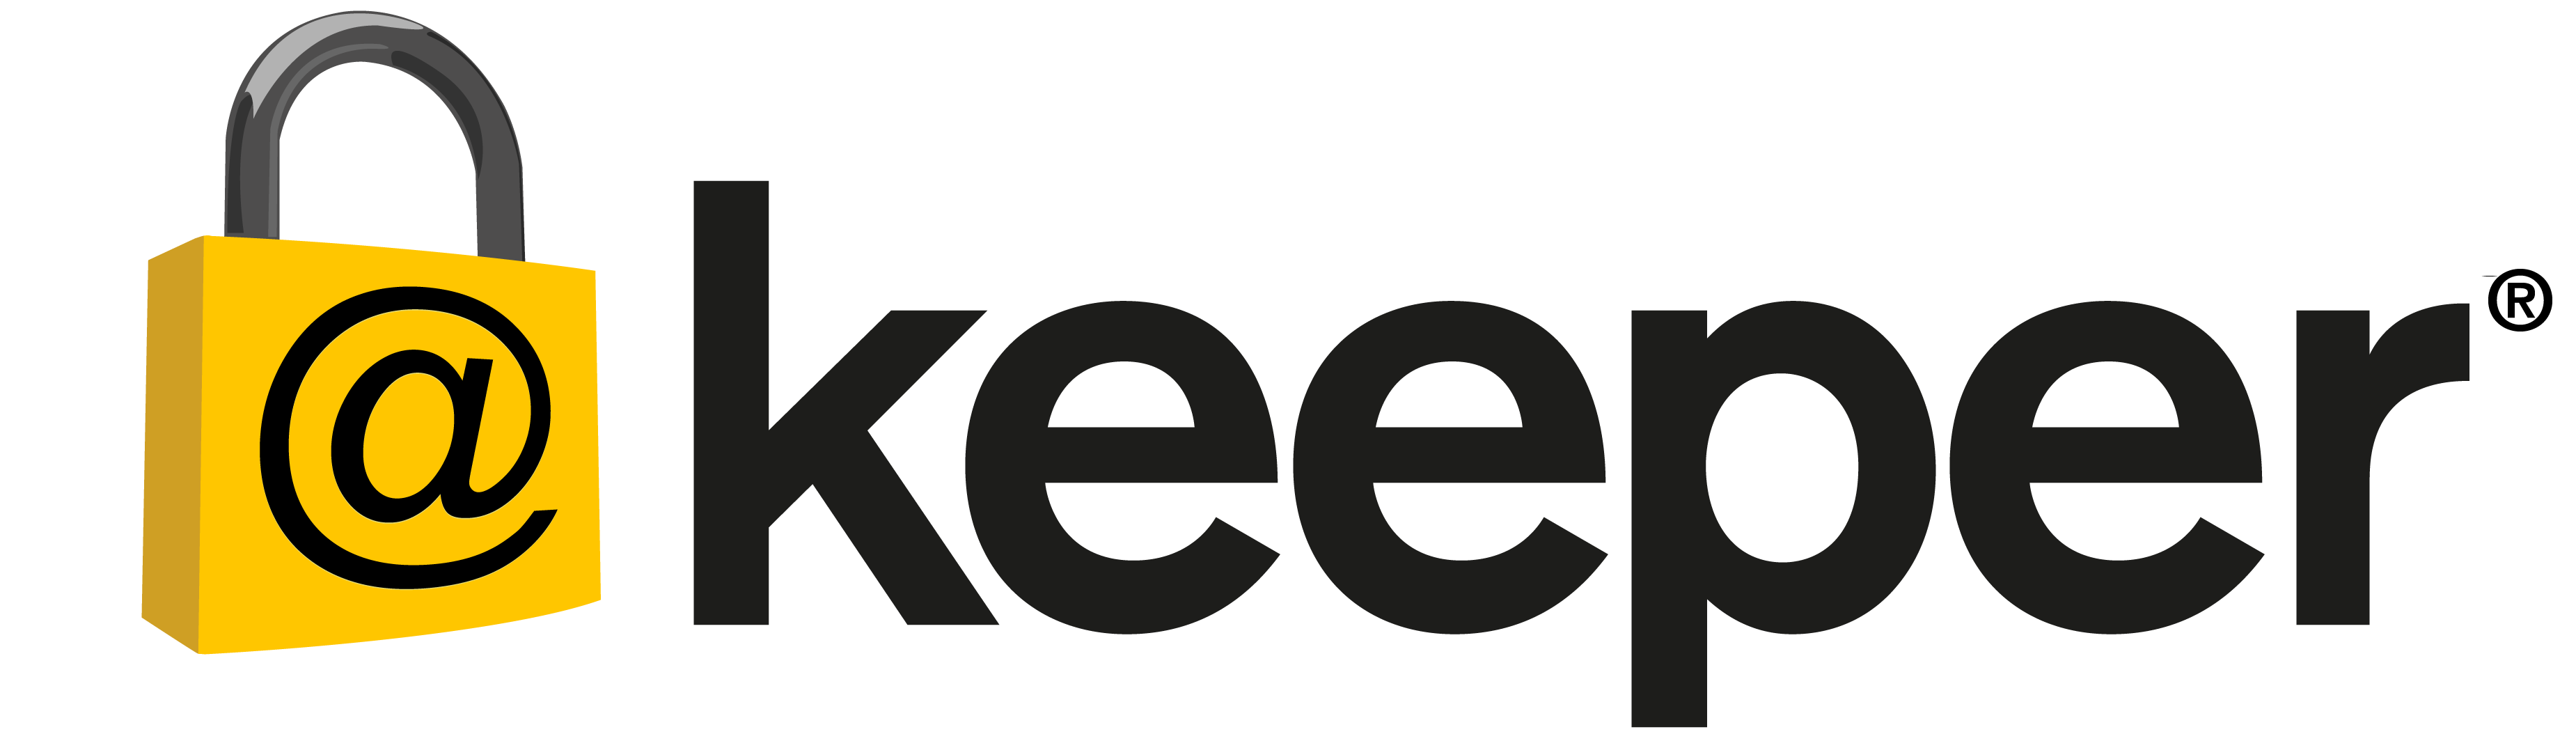 Resultado de imagen para keeper app iphone logo